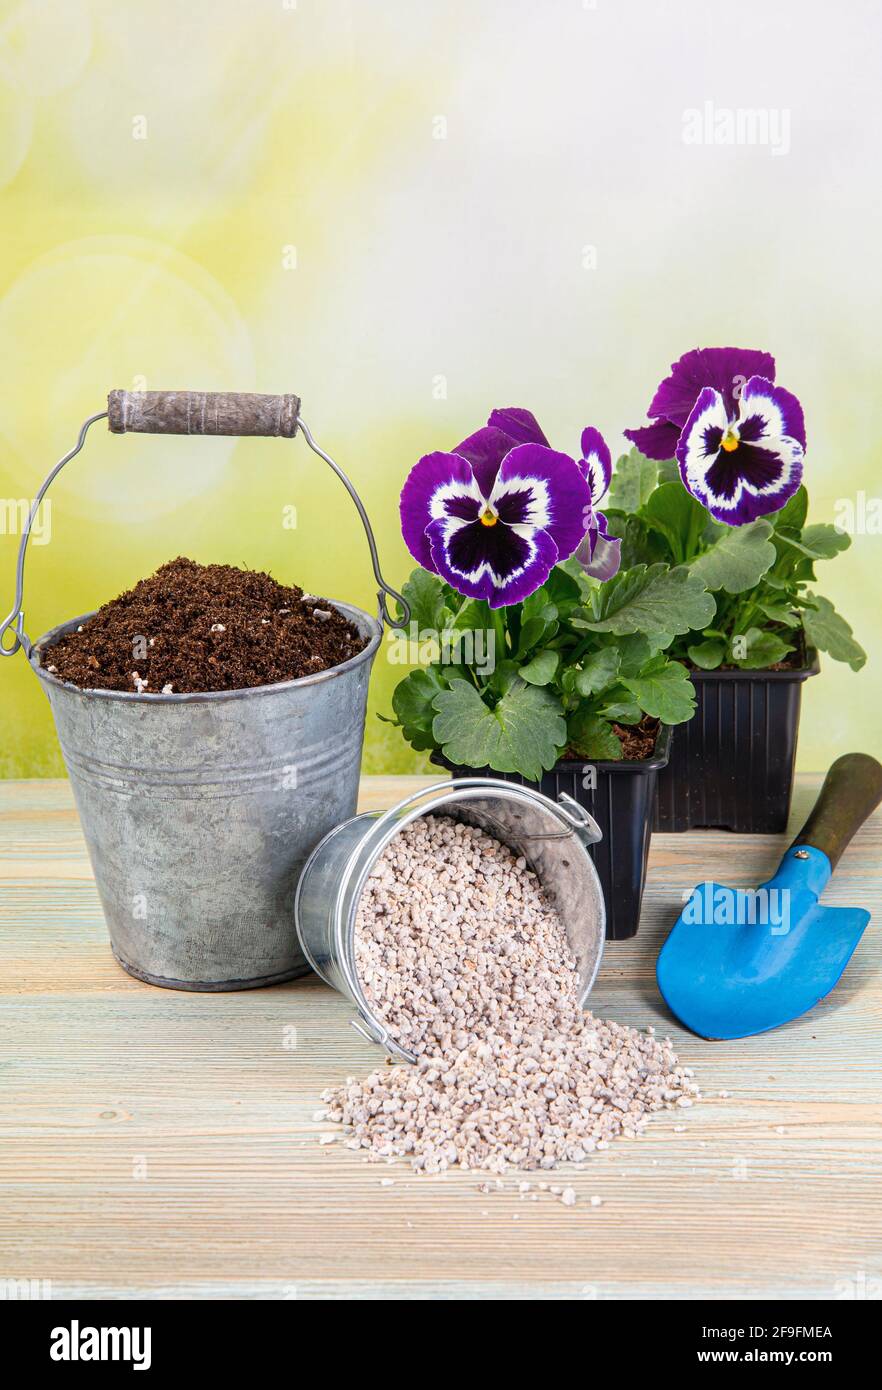 Le mélange de granules de perlite avec le sol de jardinage noir améliore la rétention d'eau, le flux d'air, l'aération, la capacité de croissance des racines de toutes les plantes en croissance. Banque D'Images